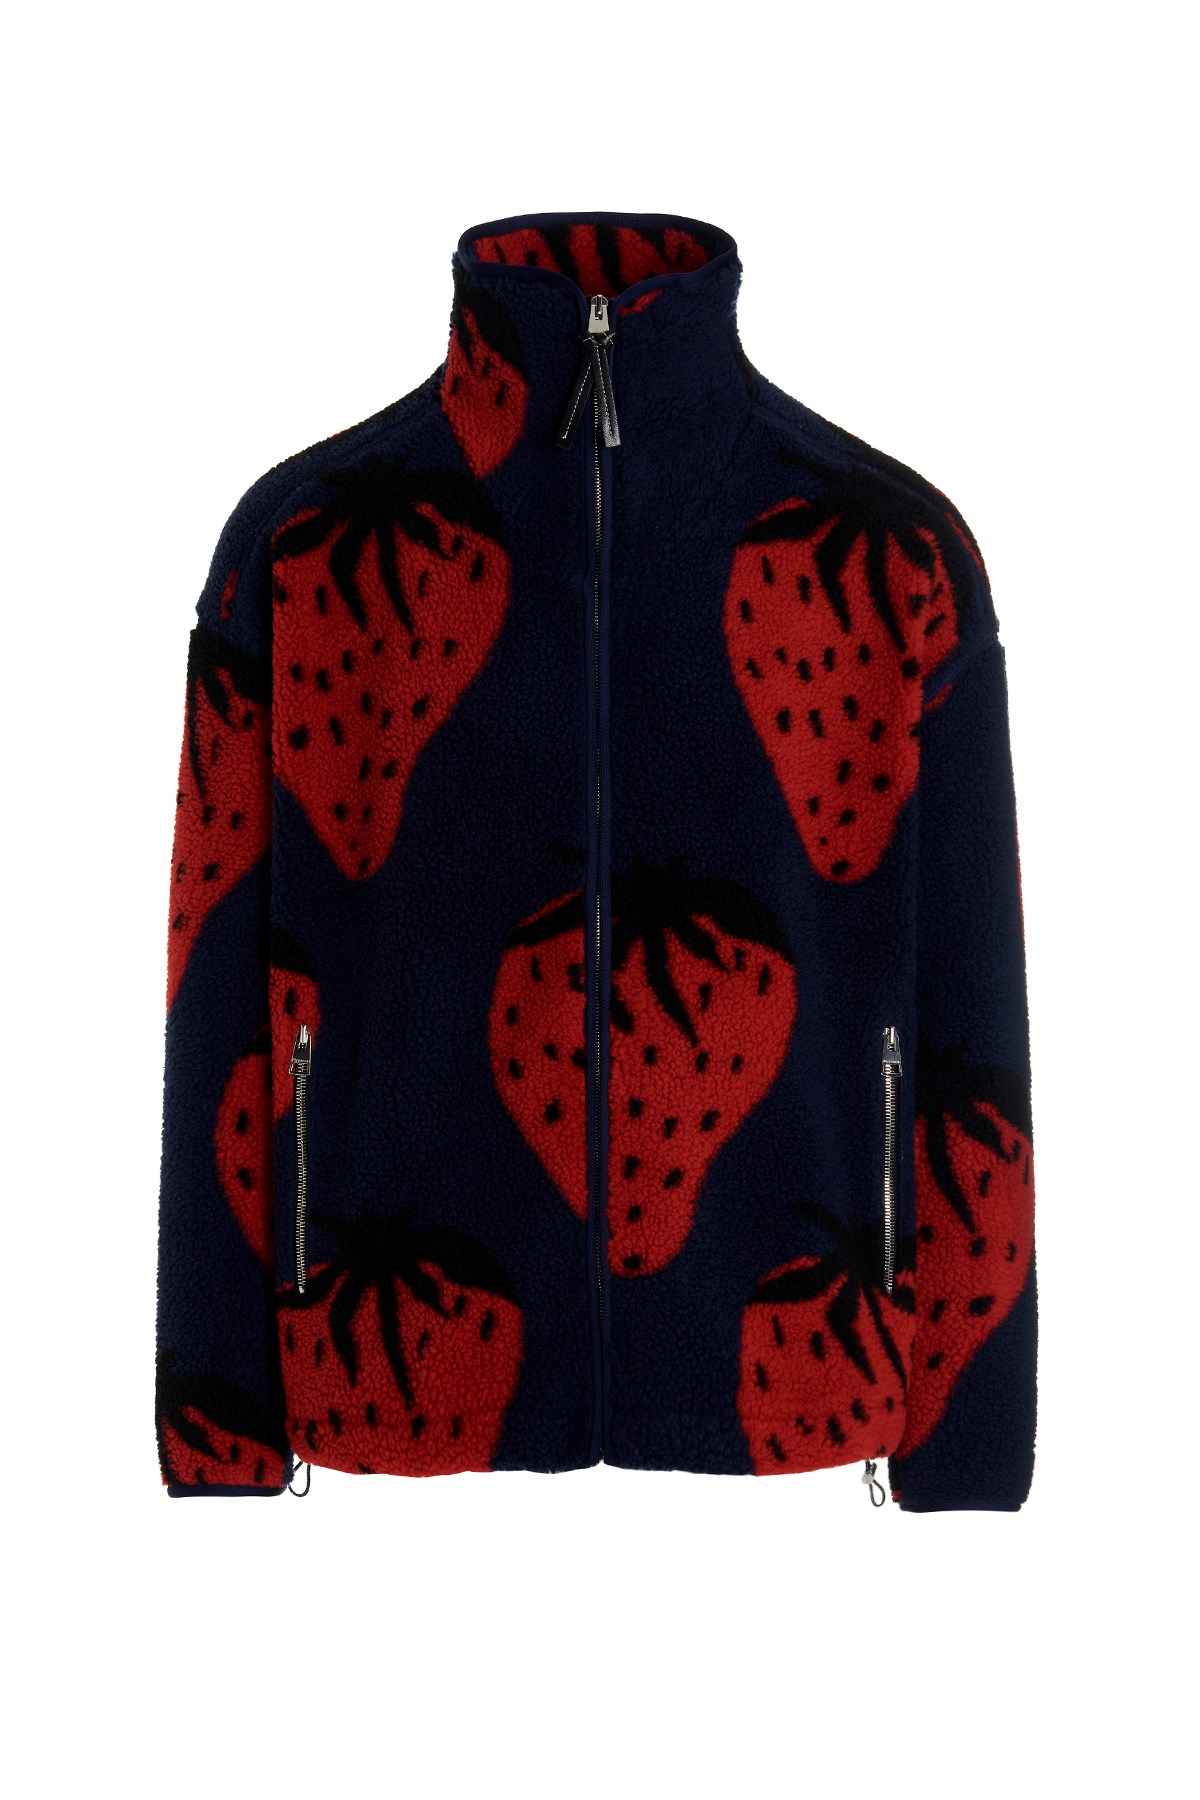 J.W.ANDERSON 'Strawberry' Fleece Jacket